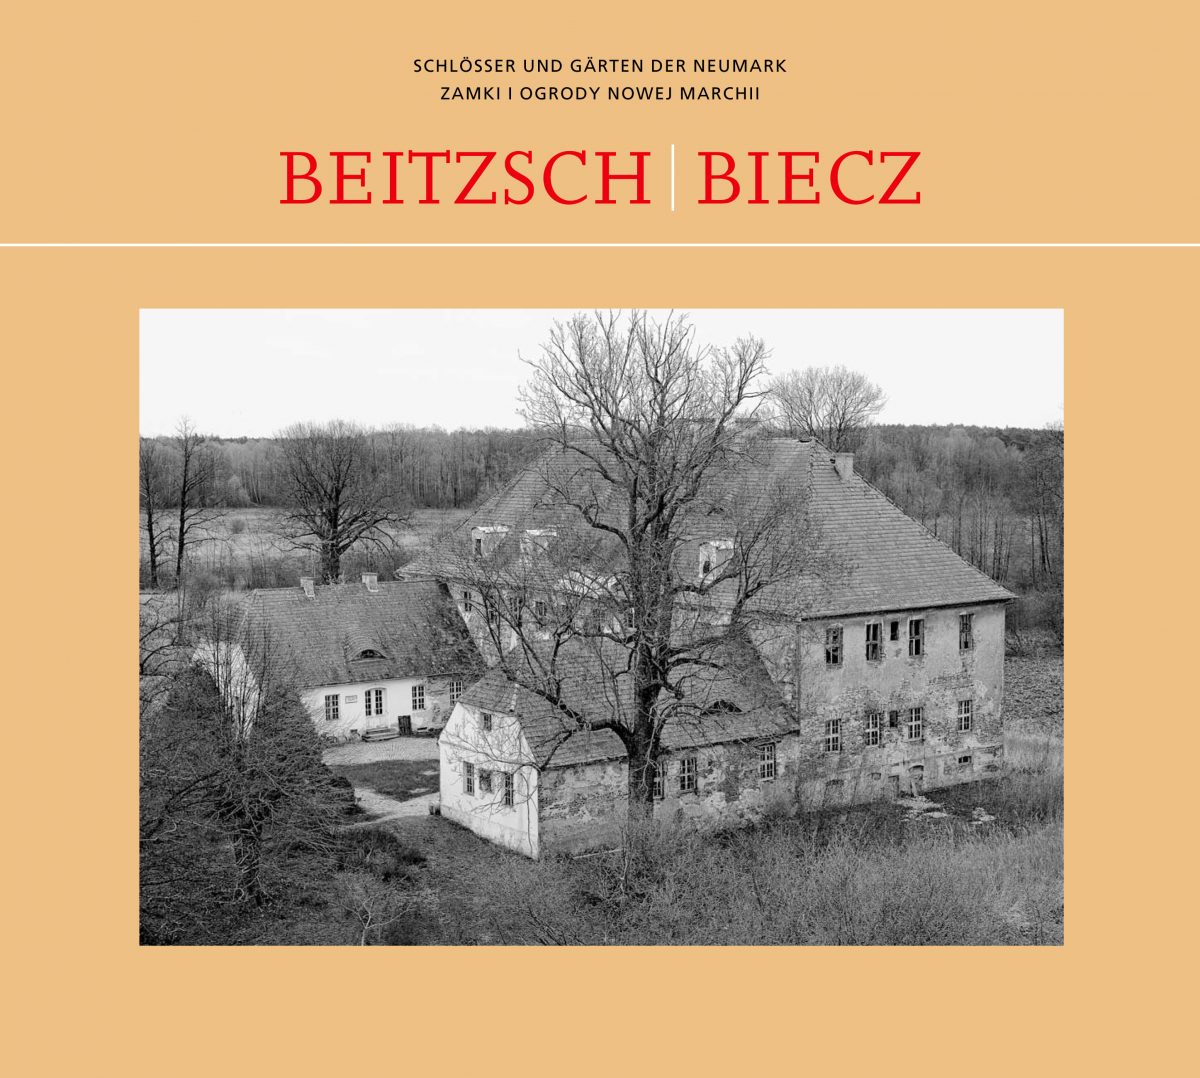 Schloss Beitzsch/Biecz – gerettet?